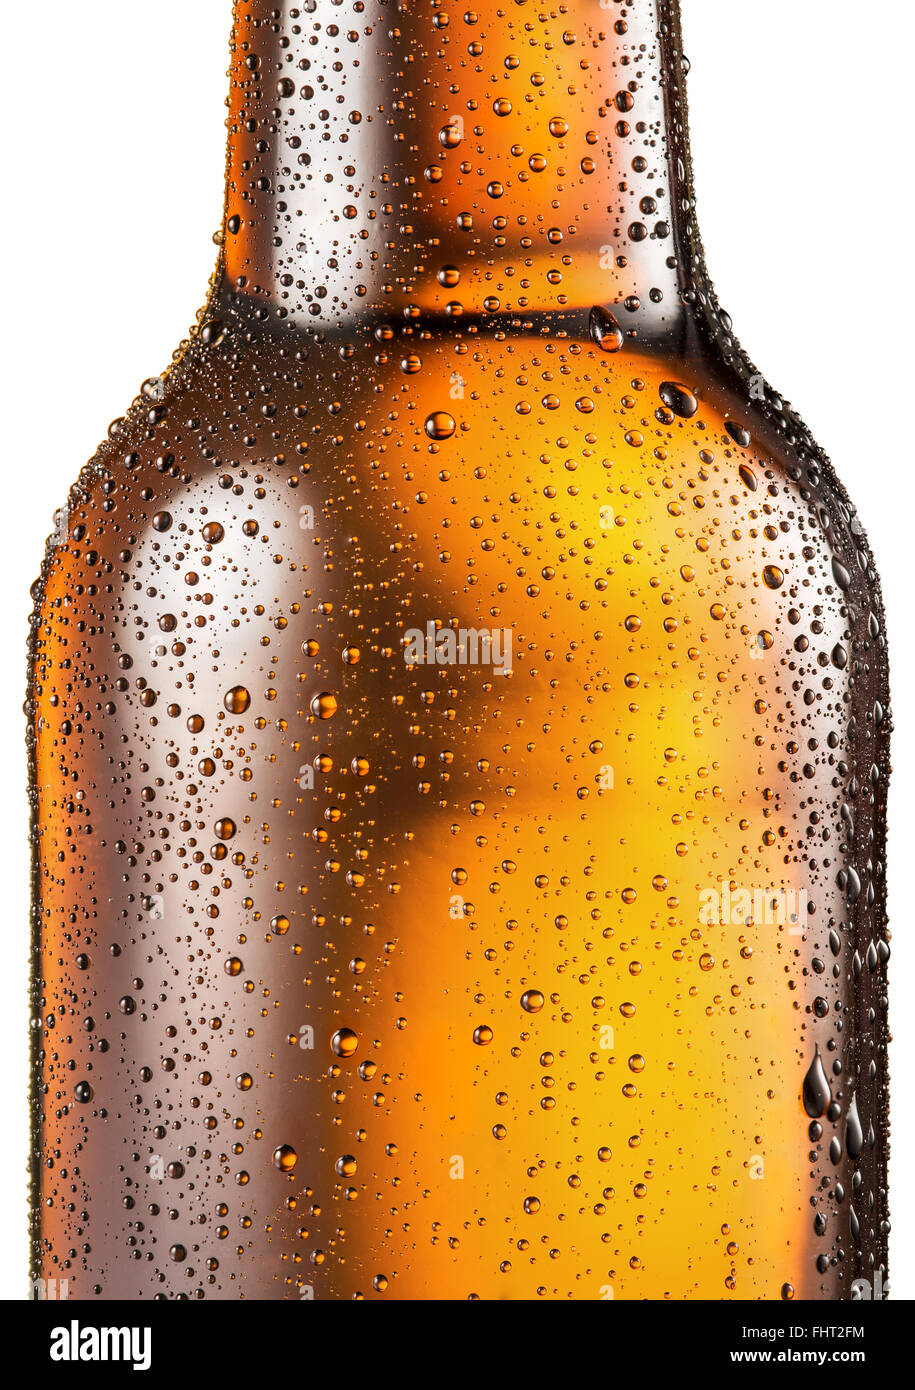 Kalte Flasche Bier mit Kondenswasser tropft auf es. Datei enthält Beschneidungspfade. Stockfoto